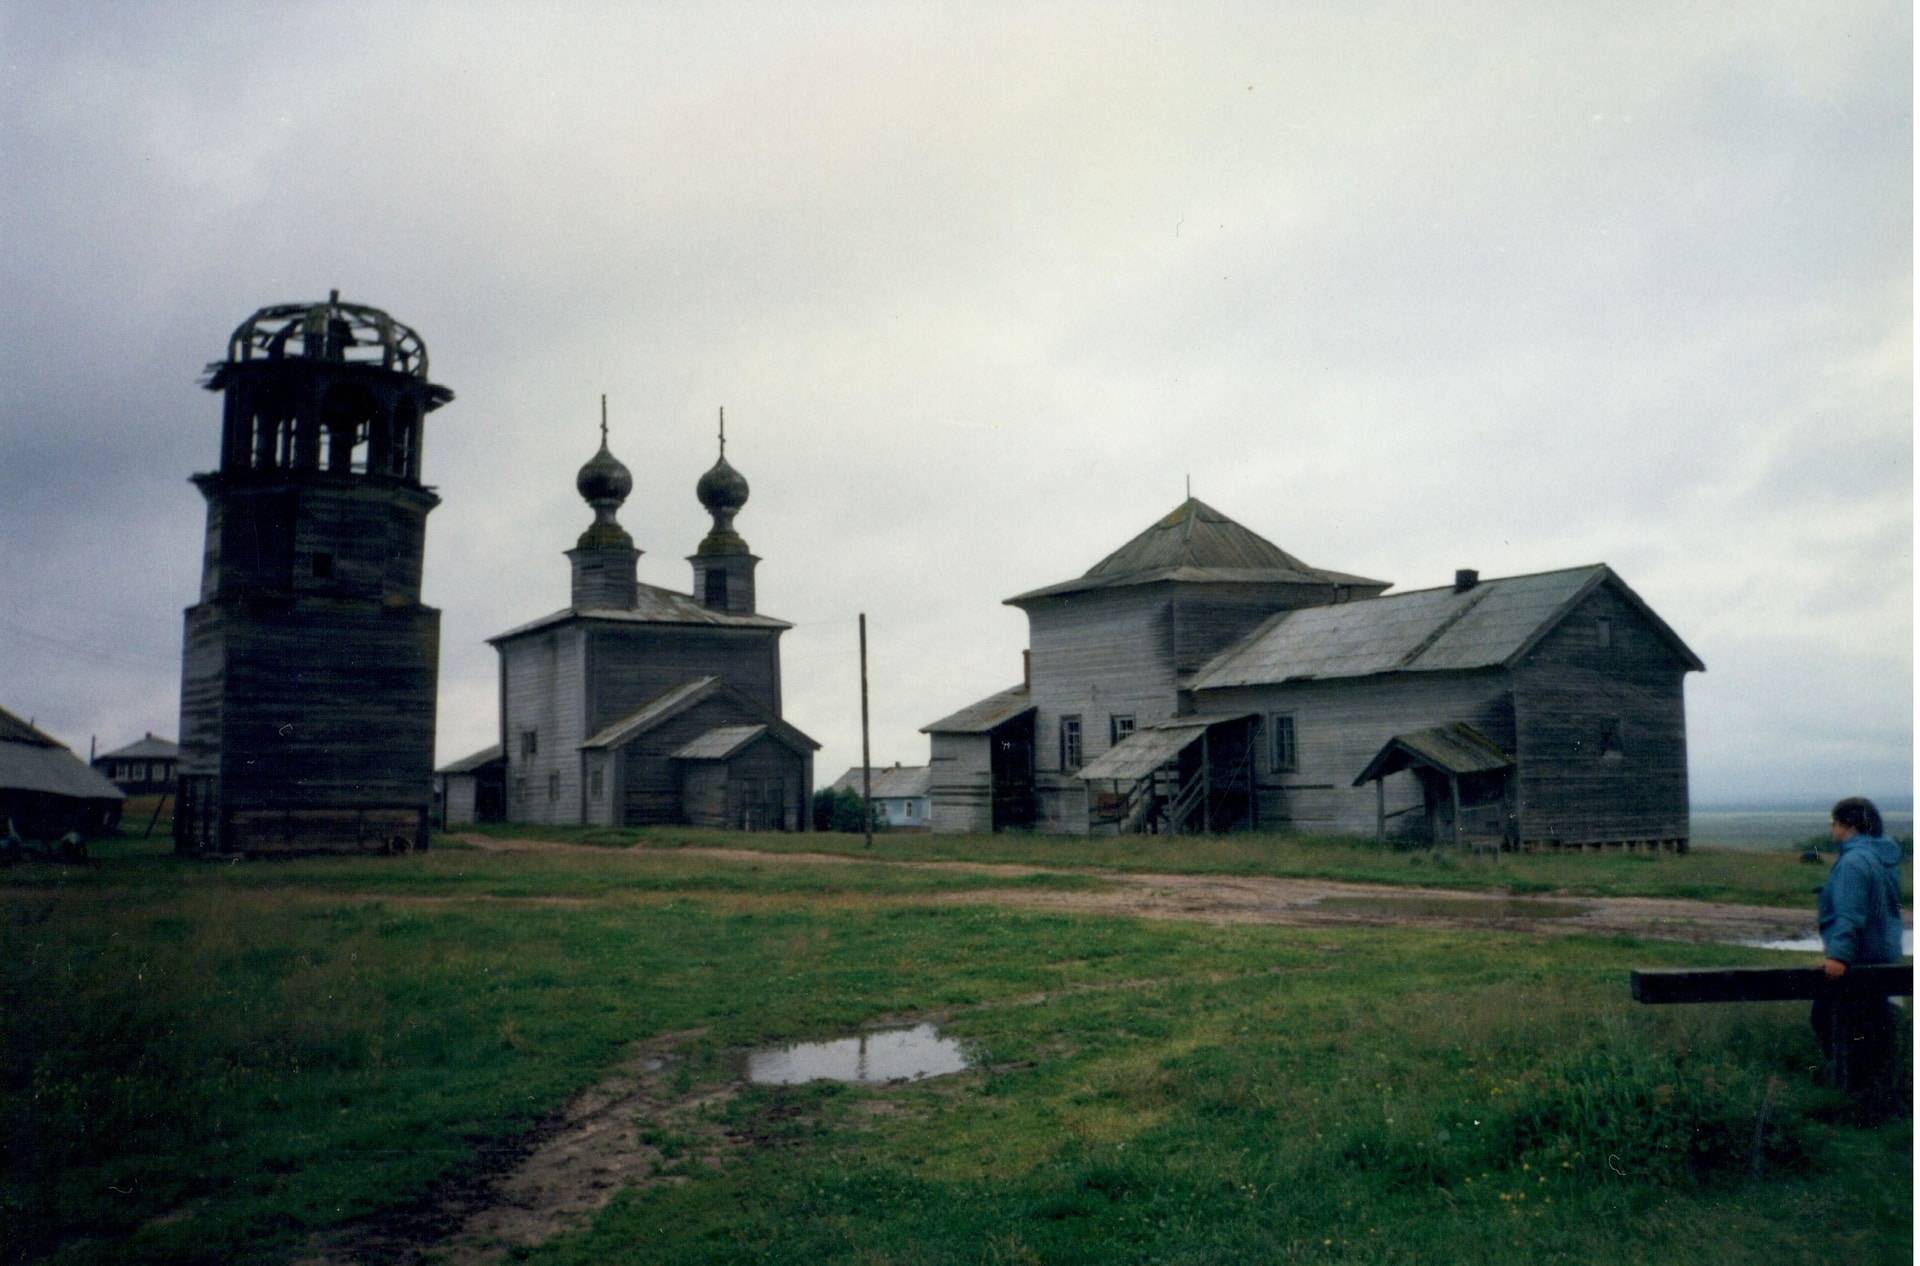 Введенская церковь с колокольней (1793 год), Никольская церковь (1636 год), сейчас на реставрации. Село Ворзогоры, Онежский район, 1996 год